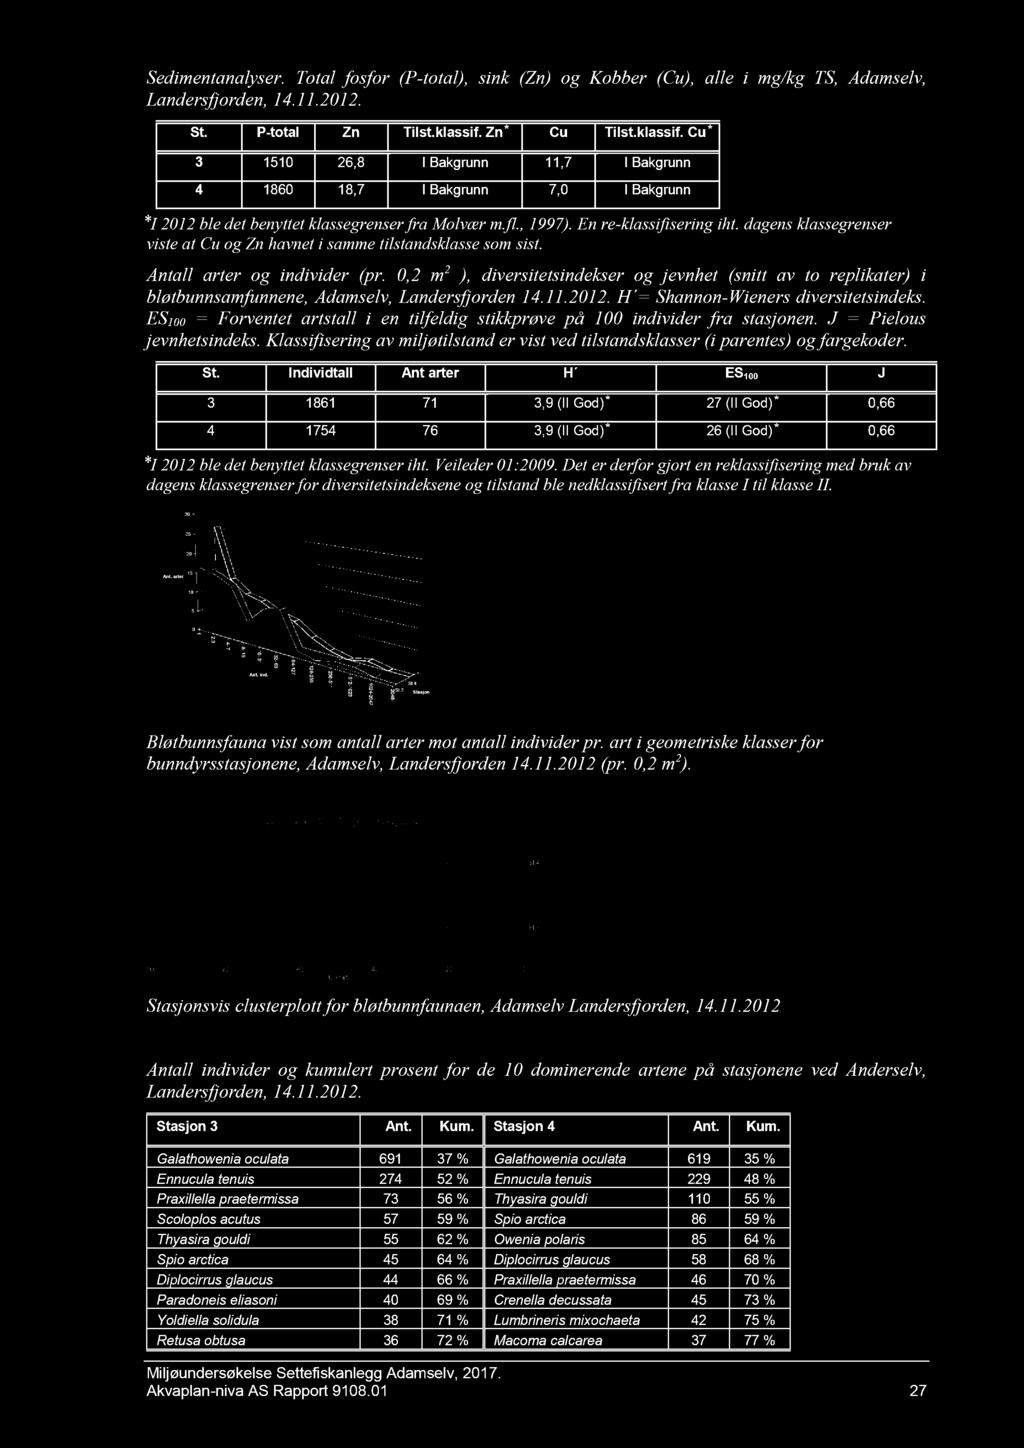 Sedimentanalyser. Total fosfor (P- total), si nk (Zn) og Kobber (Cu), alle i mg/kg TS, Adamselv, Landersfjorden, 14.11.2012. St. P - total Zn Tilst.klassif.